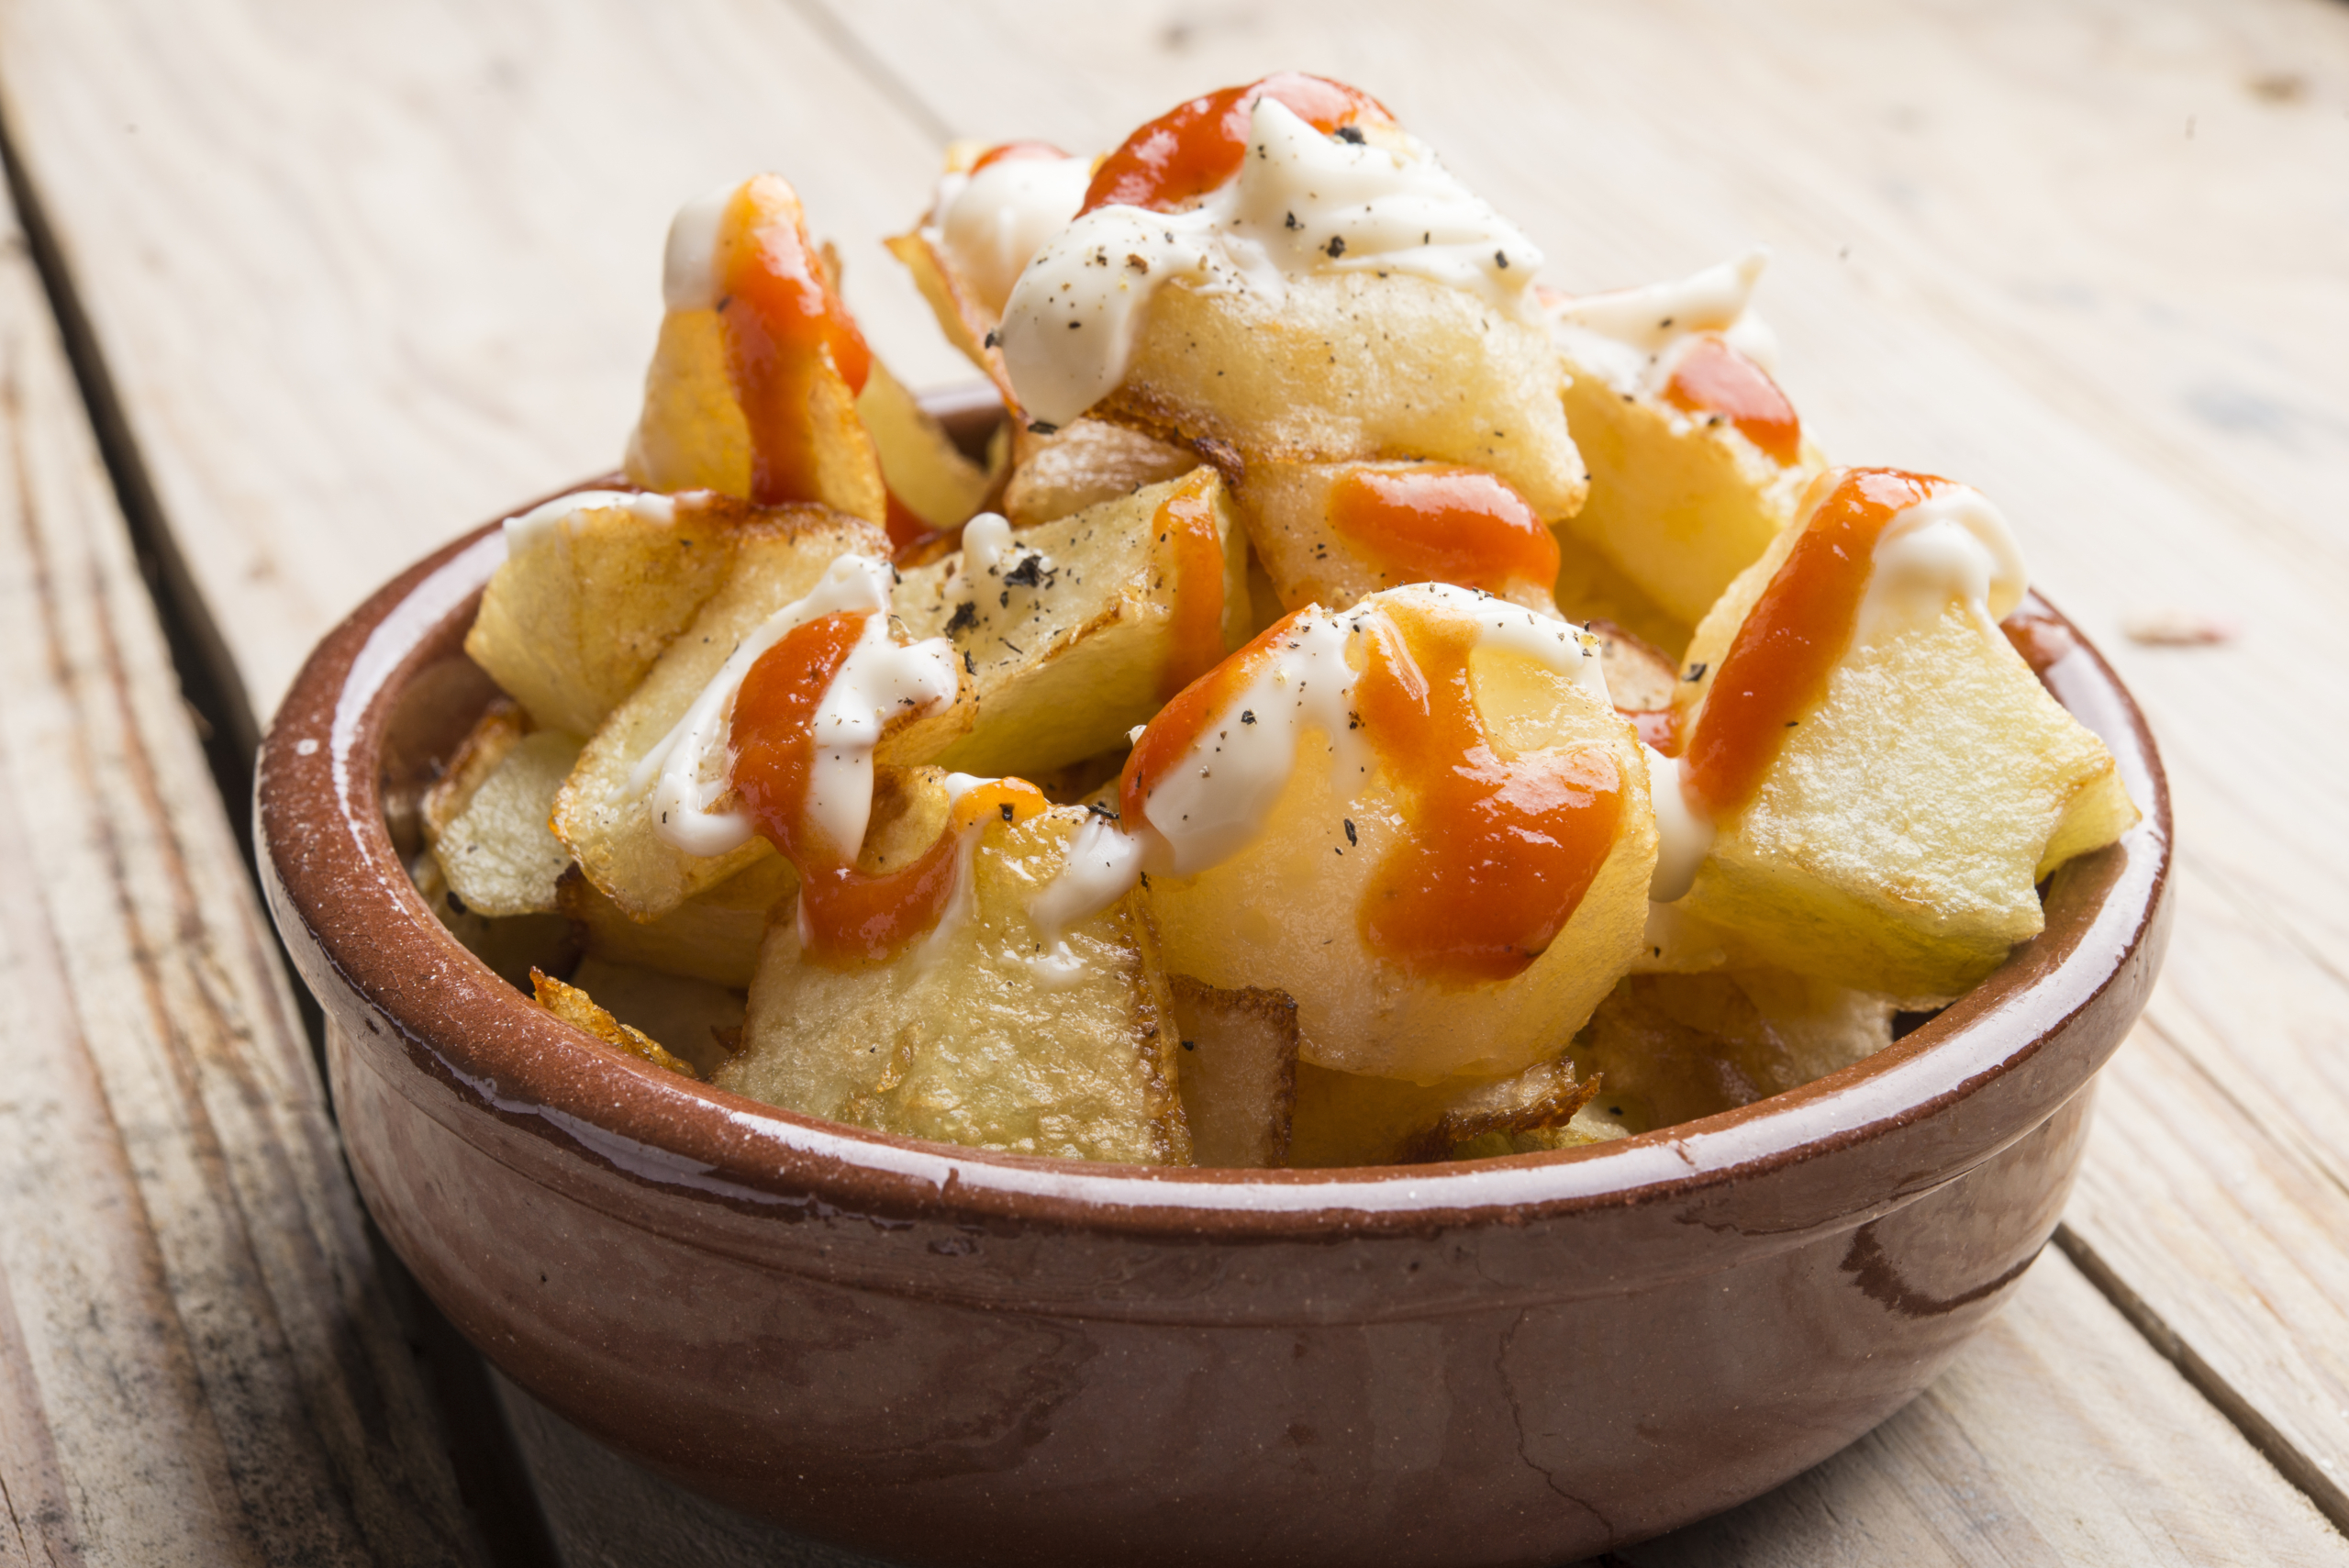 Khoai tây cay là những miếng khoai tây chiên phủ sốt cà chua cay đặc biệt và sốt tỏi trắng. (Ảnh: Shutterstock)